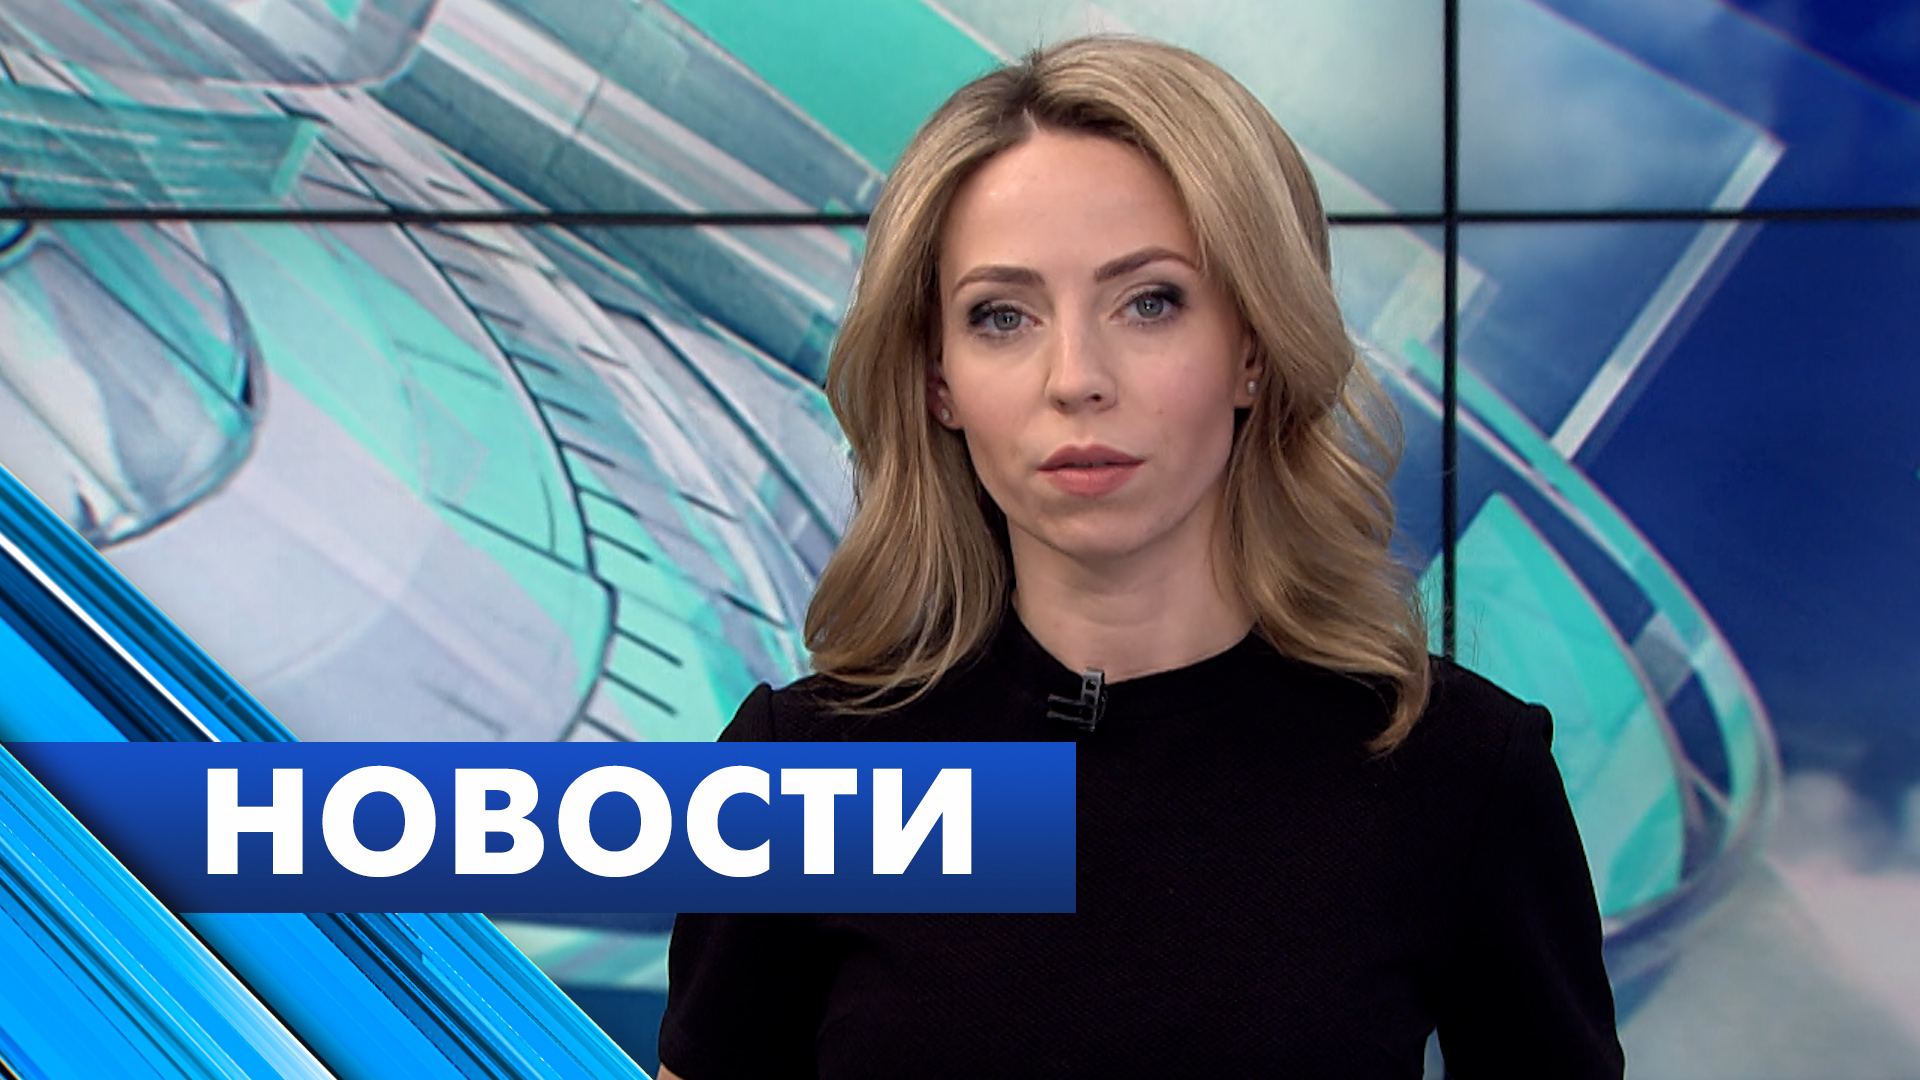 Главные новости Петербурга / 1 апреля